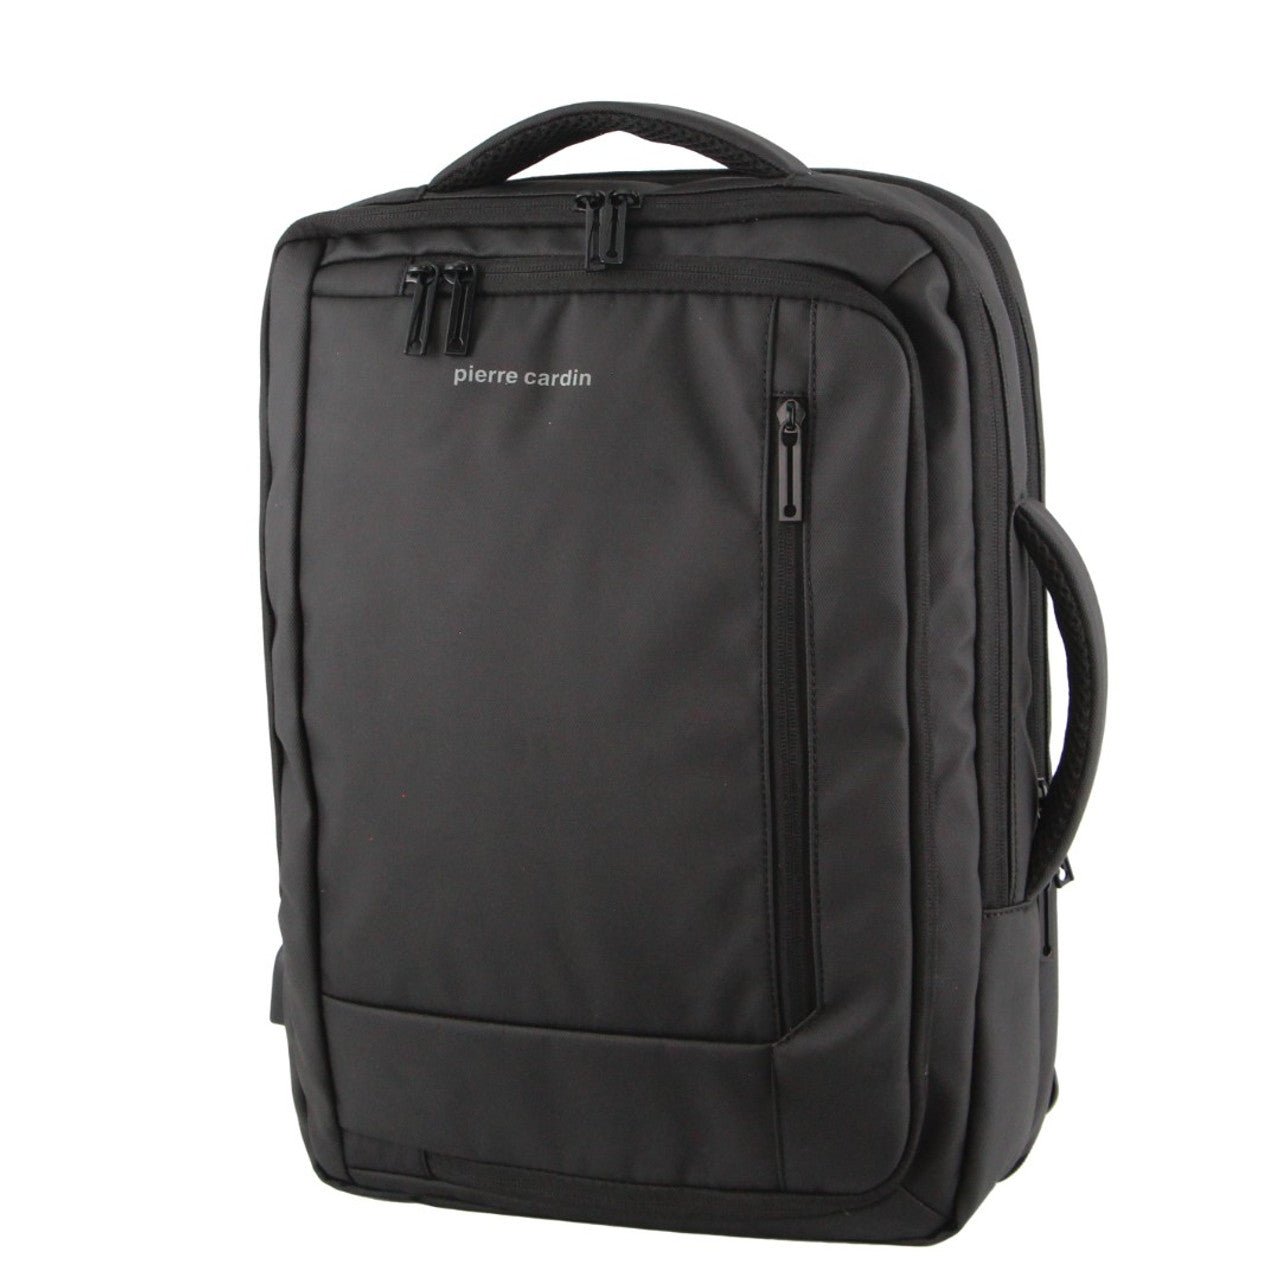 Pierre Cardin -PC3623 Top & Side handle 15in Laptop backpack w USB port - Grey-1